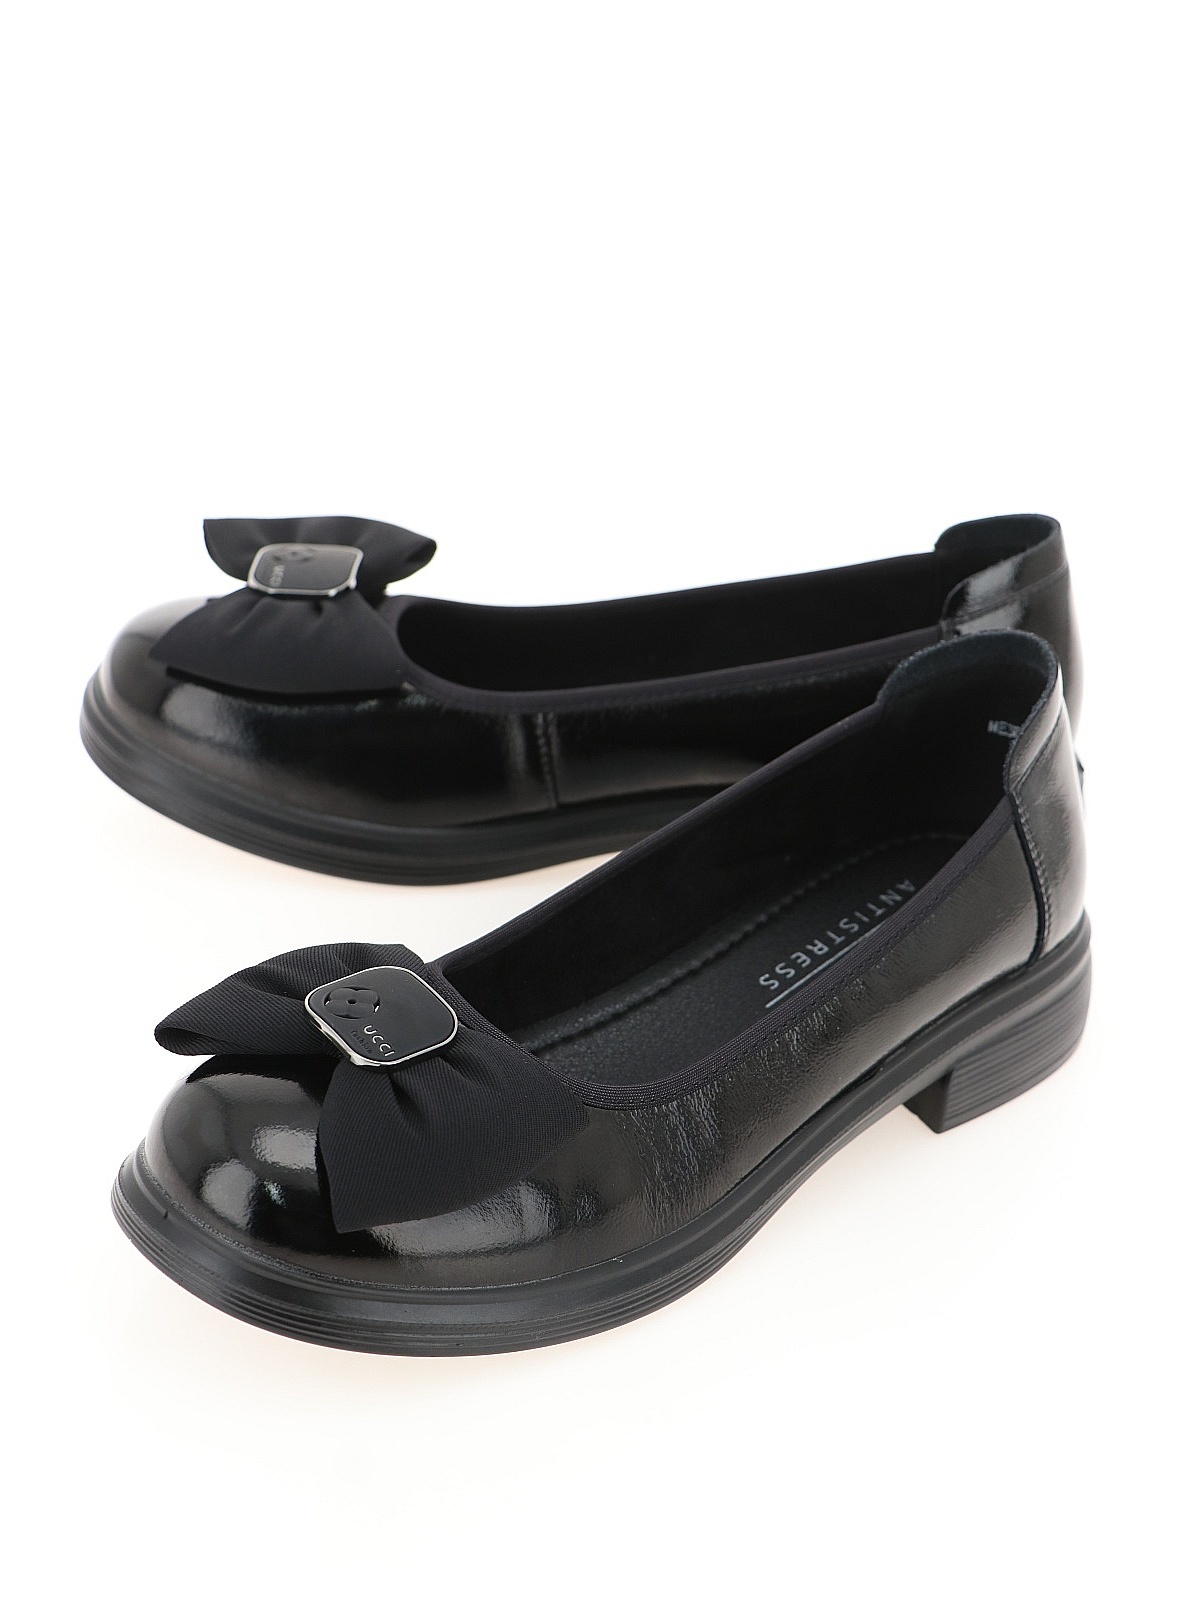 Туфли женские Baden ME306-02 черные 40 RU